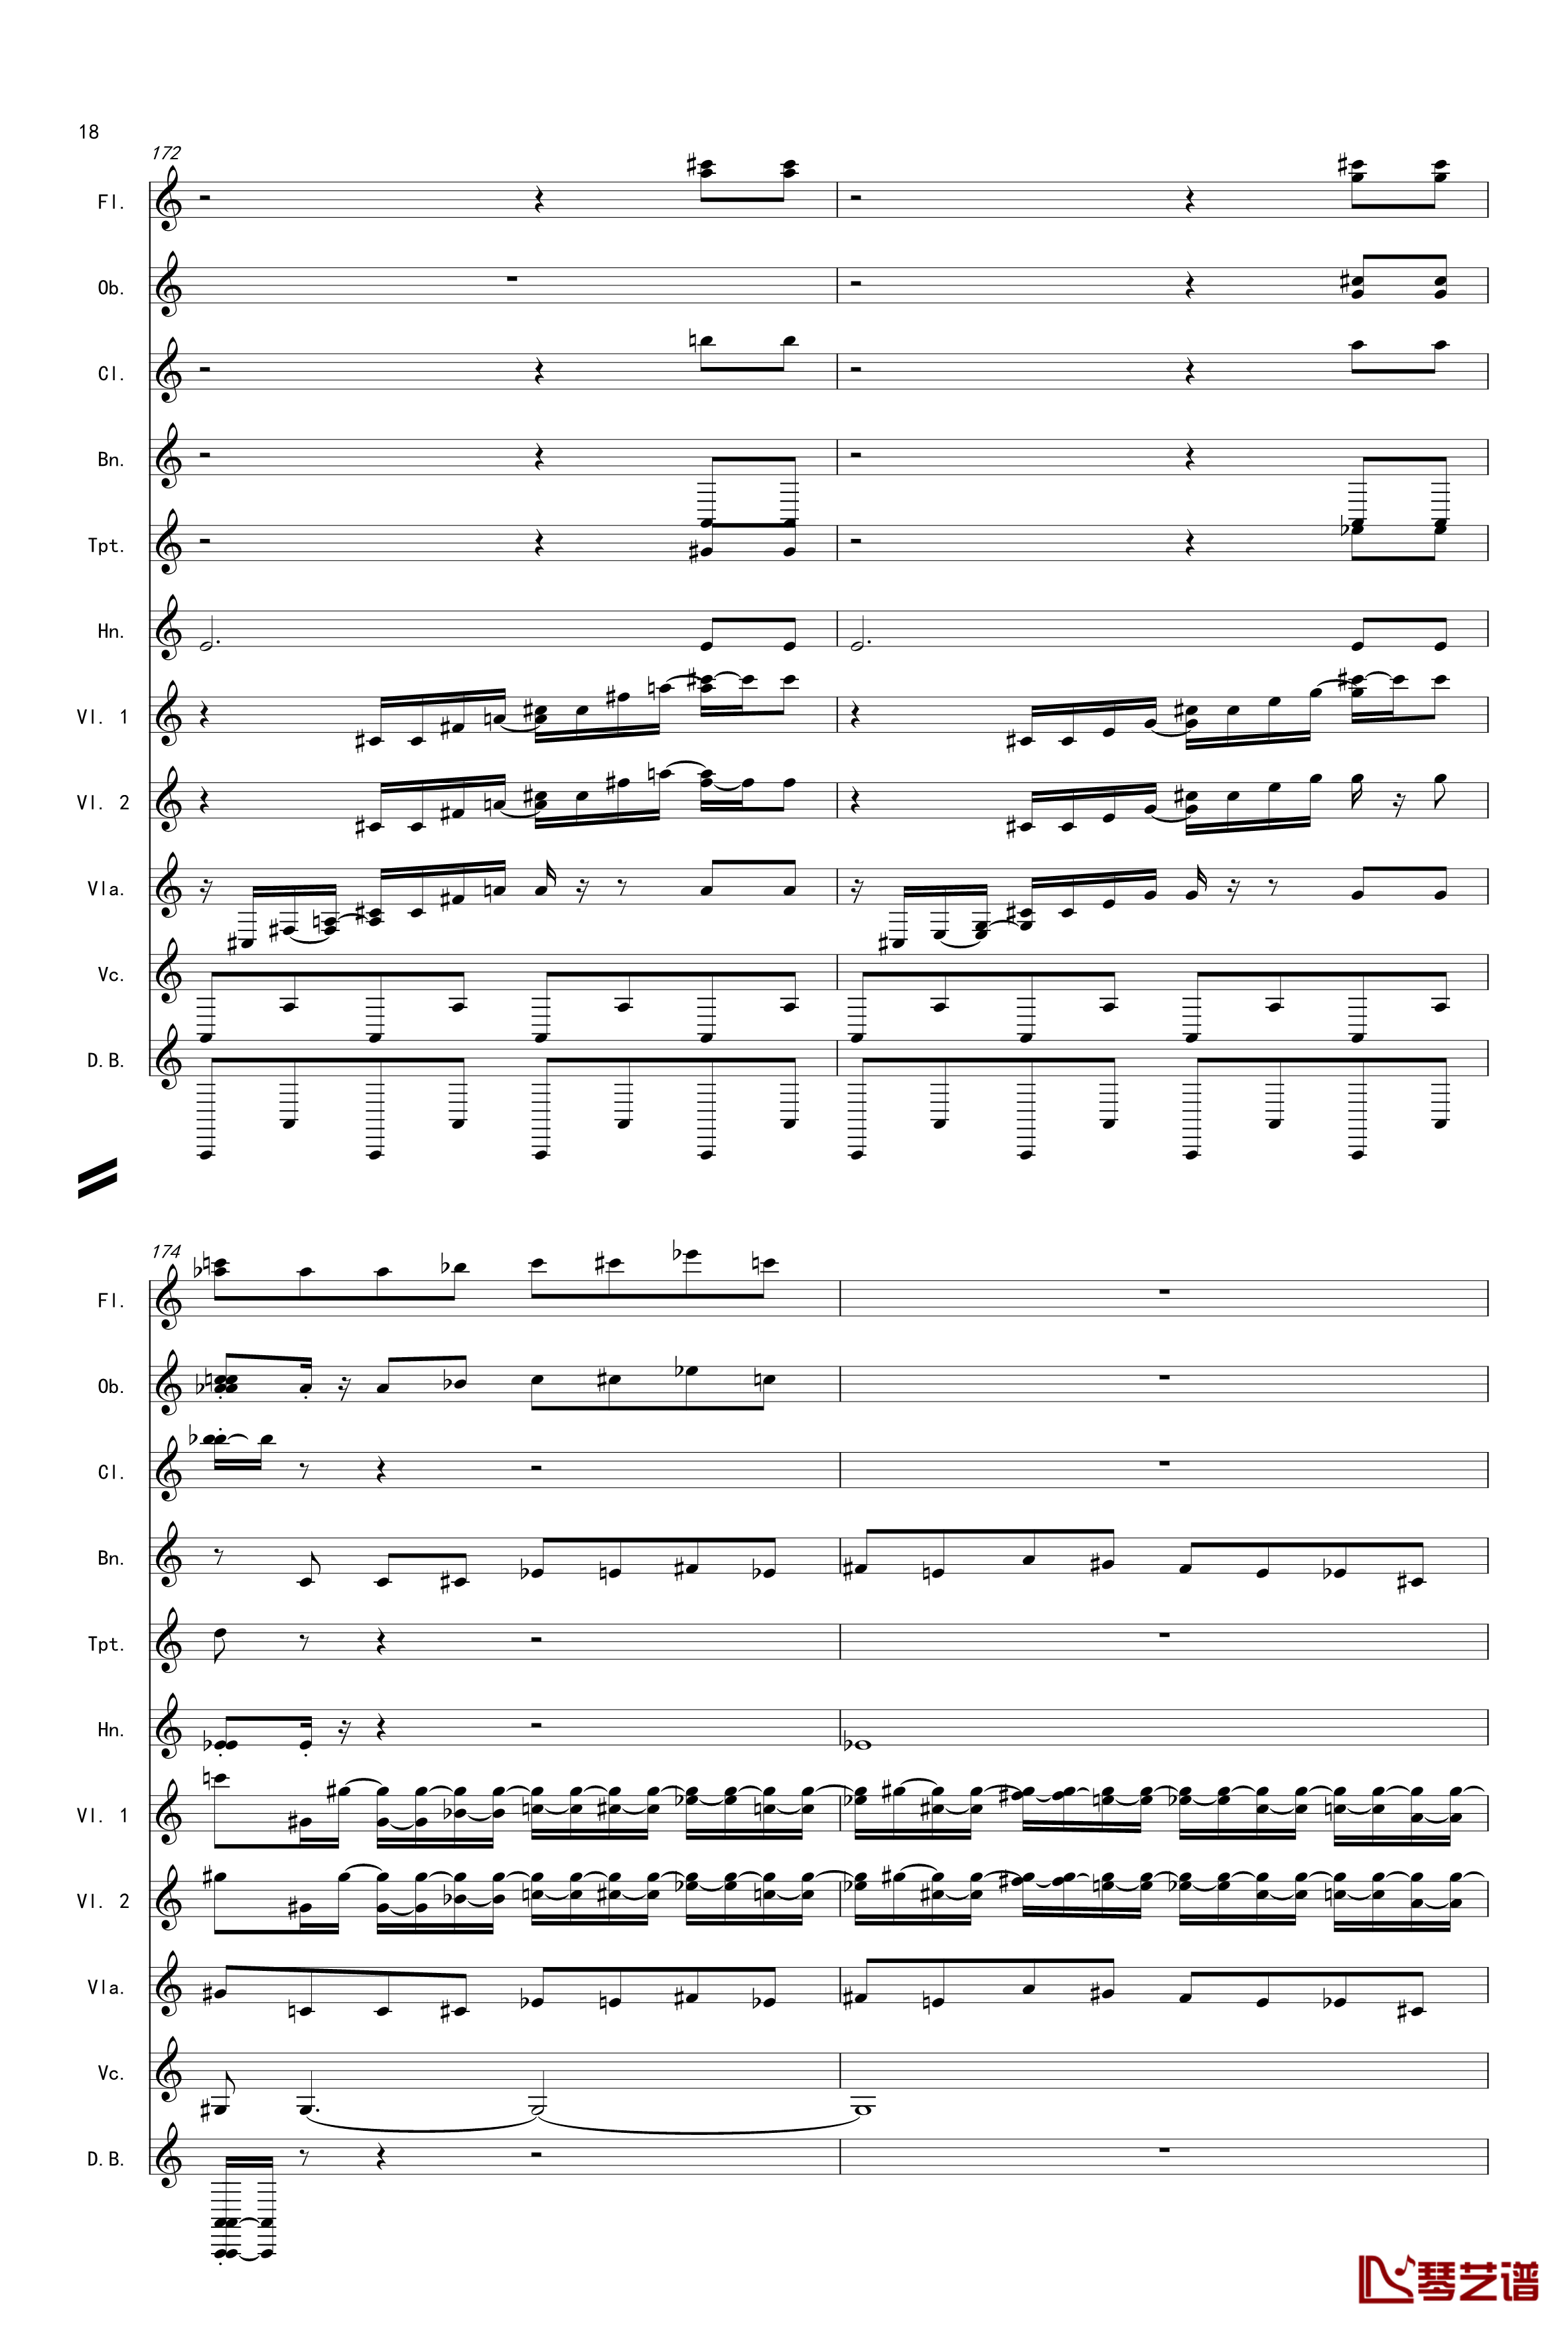 奏鸣曲之交响第14首Ⅲ钢琴谱-贝多芬-beethoven18